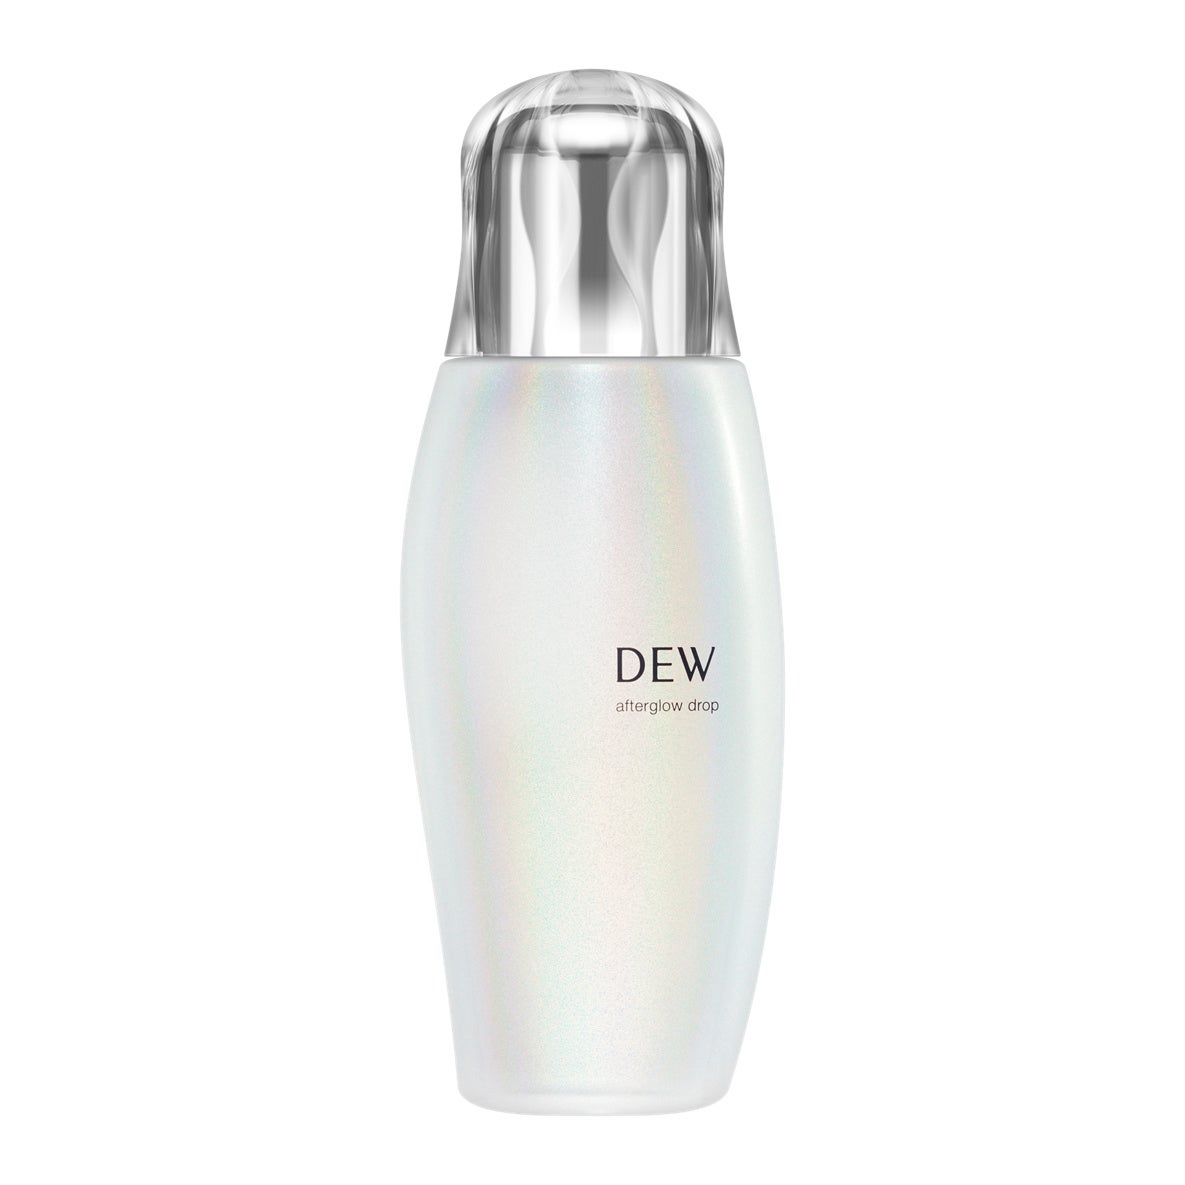 株式会社ディーエイチシーの
「DHCオリーブバージンオイル」が
美容オイルに関する調査でNo.1を獲得　
調査実施：株式会社ドゥ・ハウス